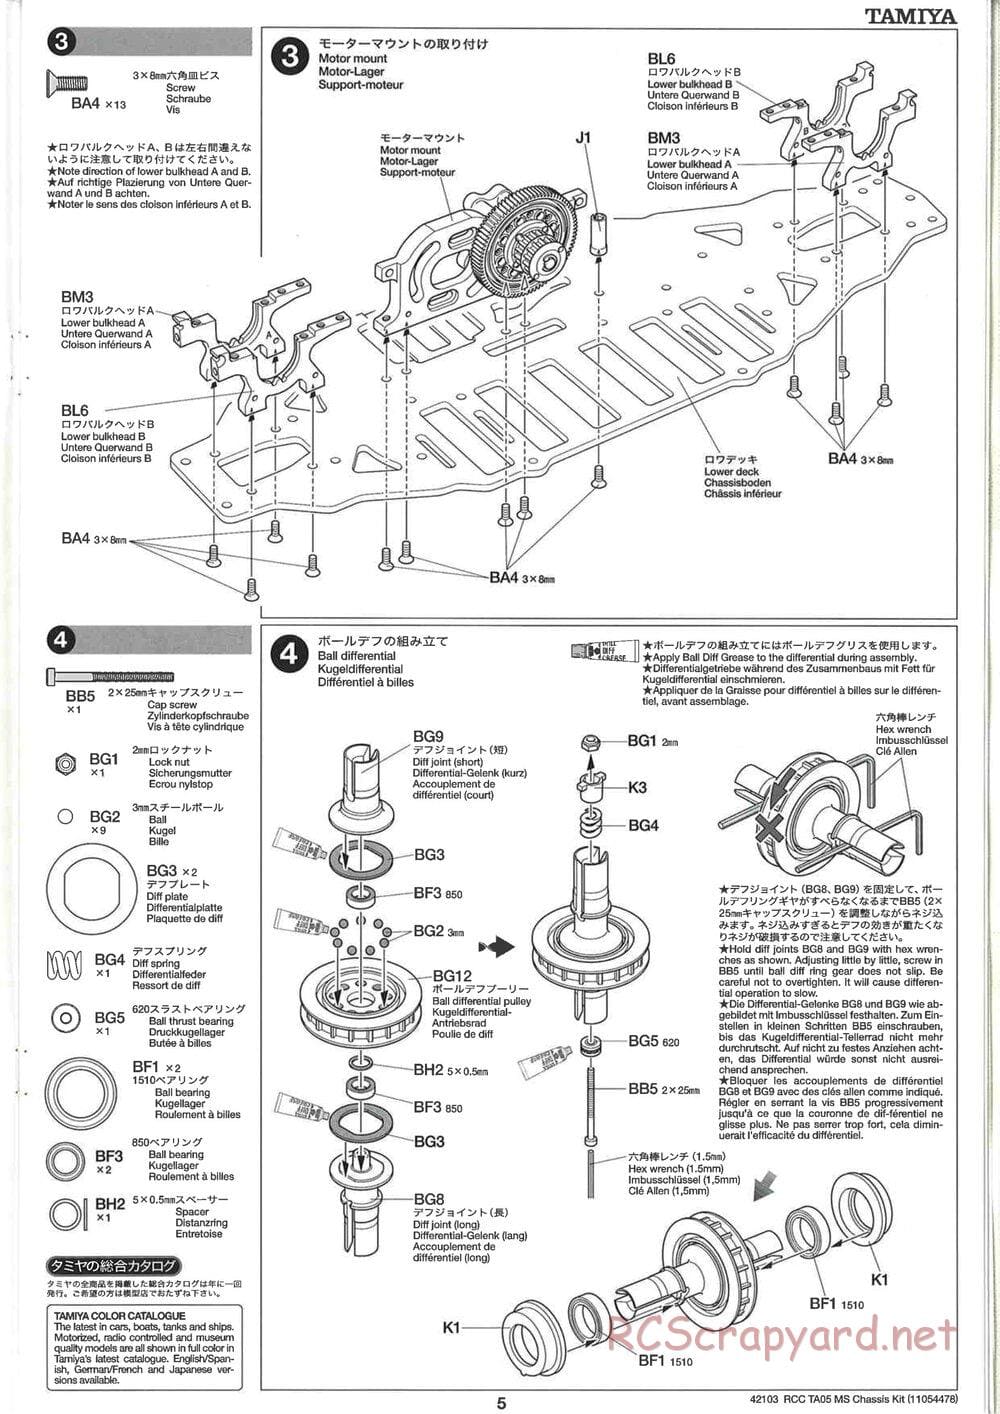 Tamiya - TA05 MS Chassis - Manual - Page 5